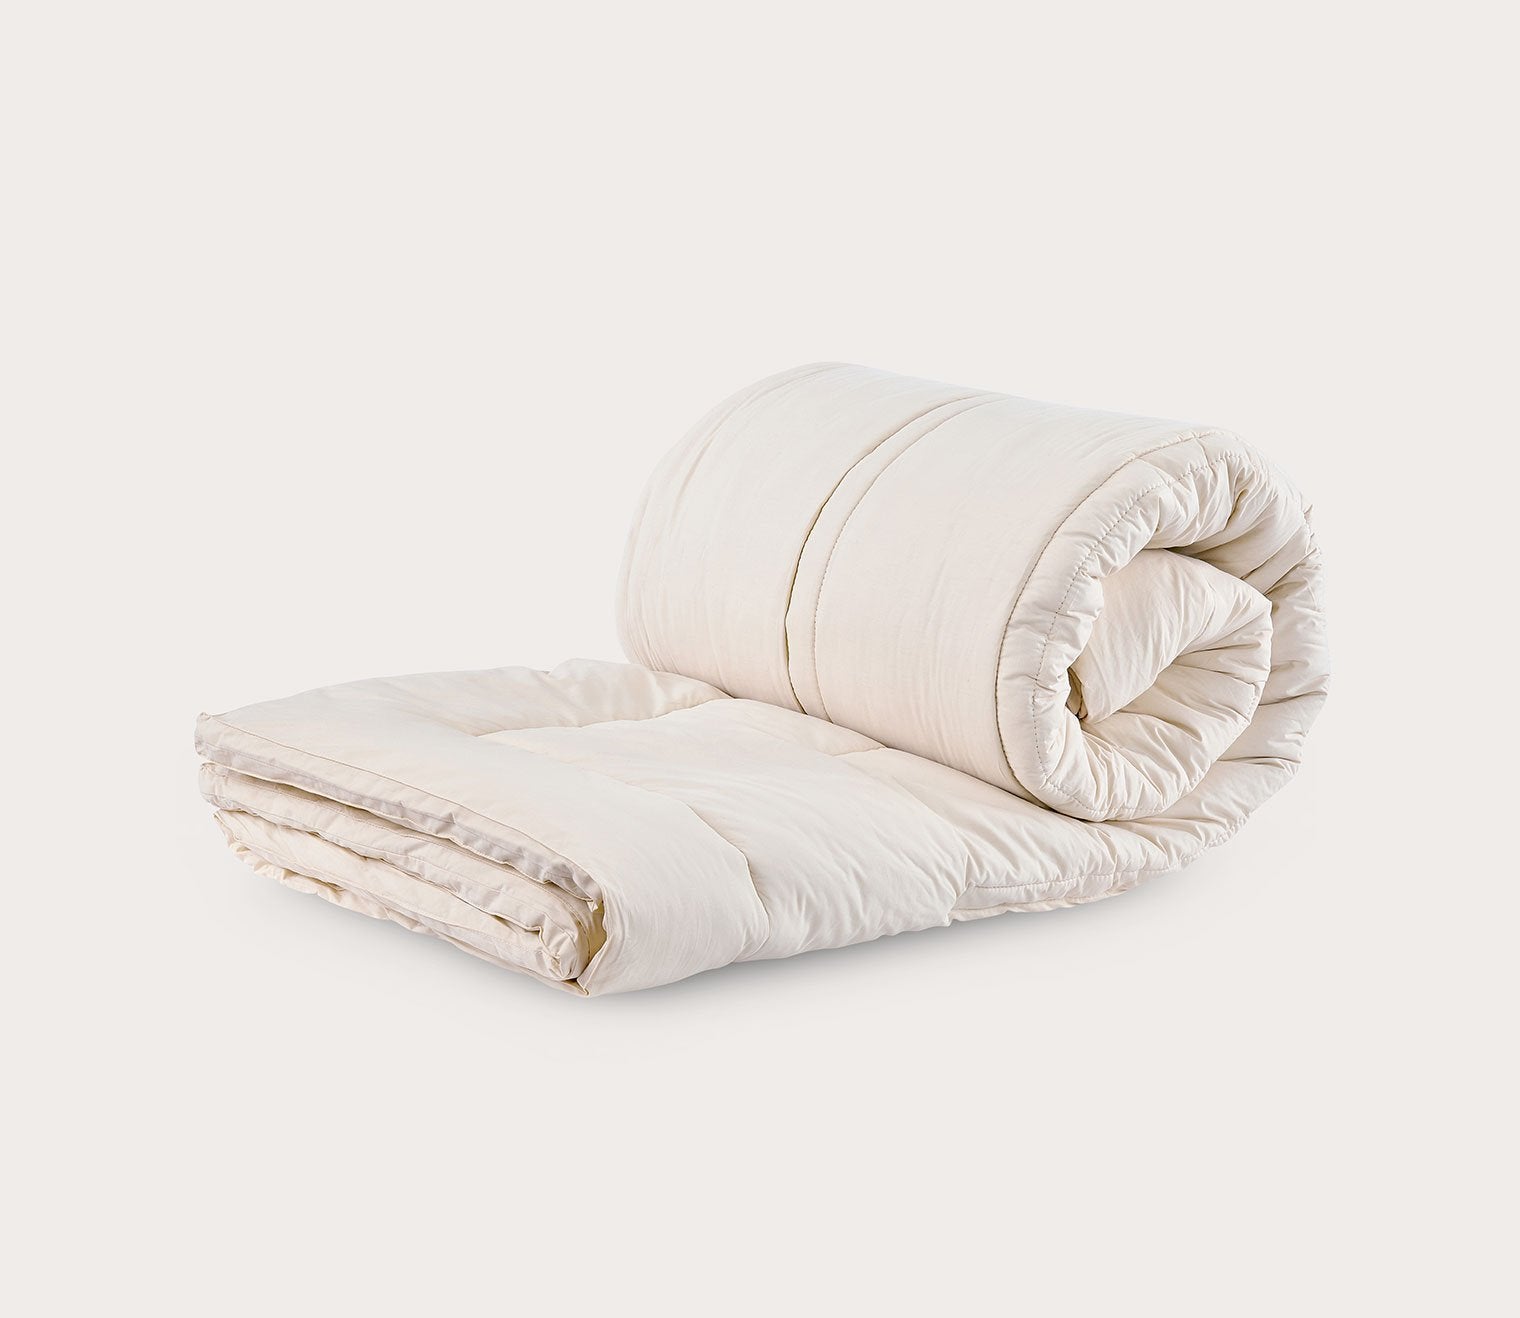 HypoAllergenic Organic Wool Comforter Duvet Sleep&Beyond Full/Queen